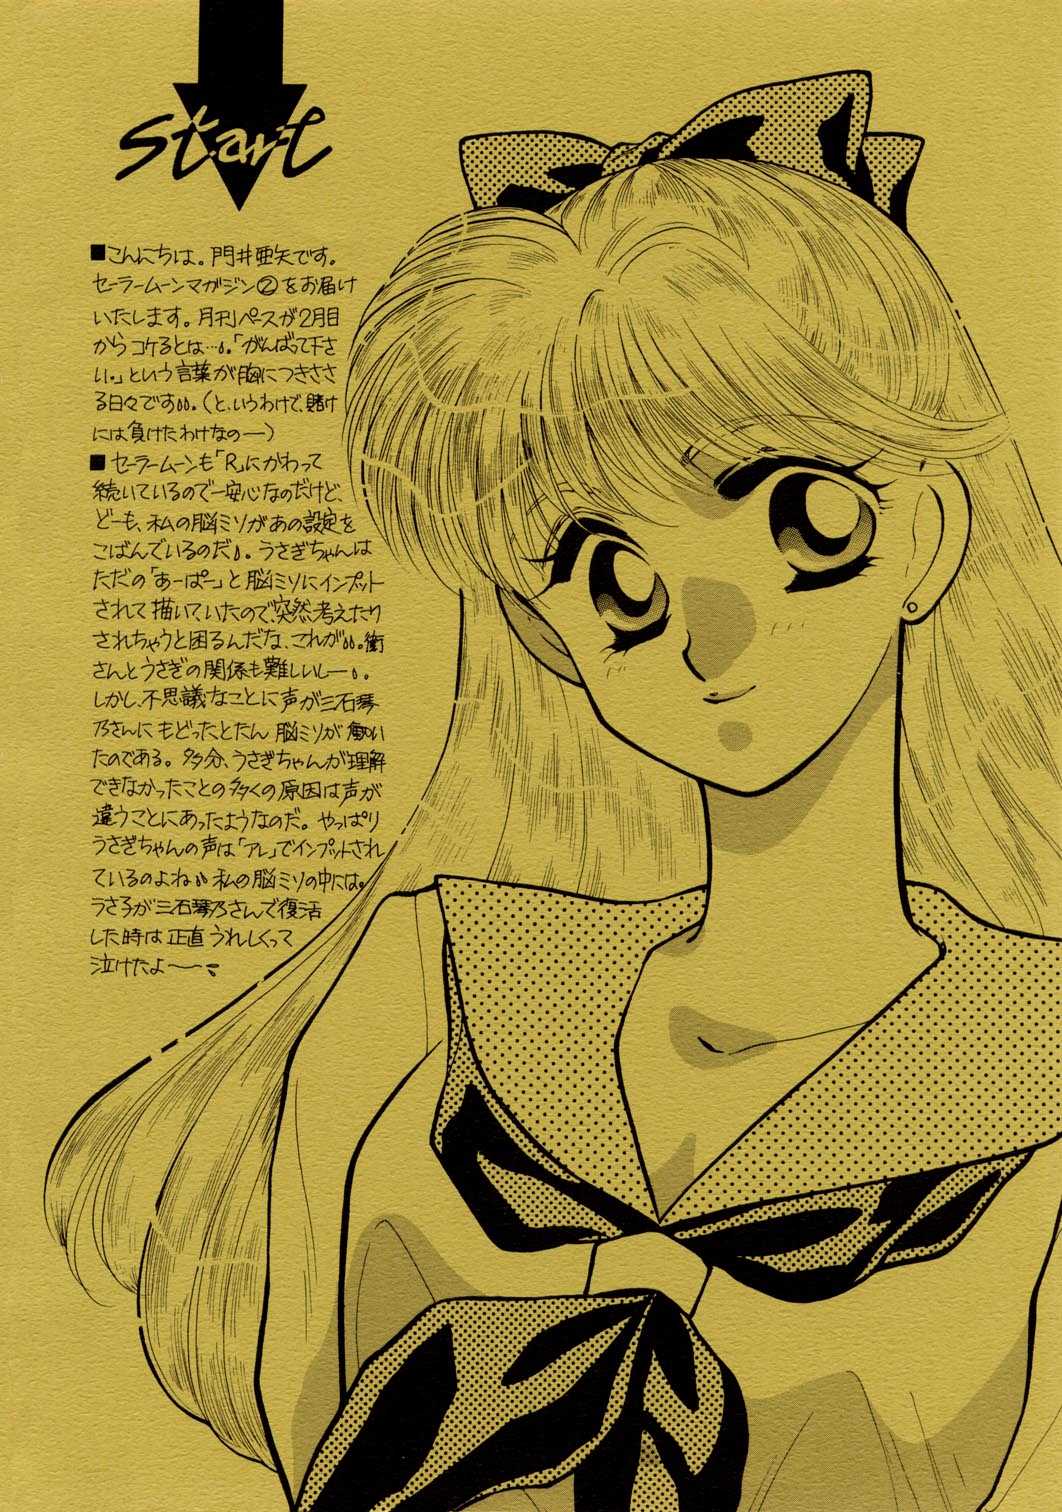 Sailor Moon JodanJanaiyo 